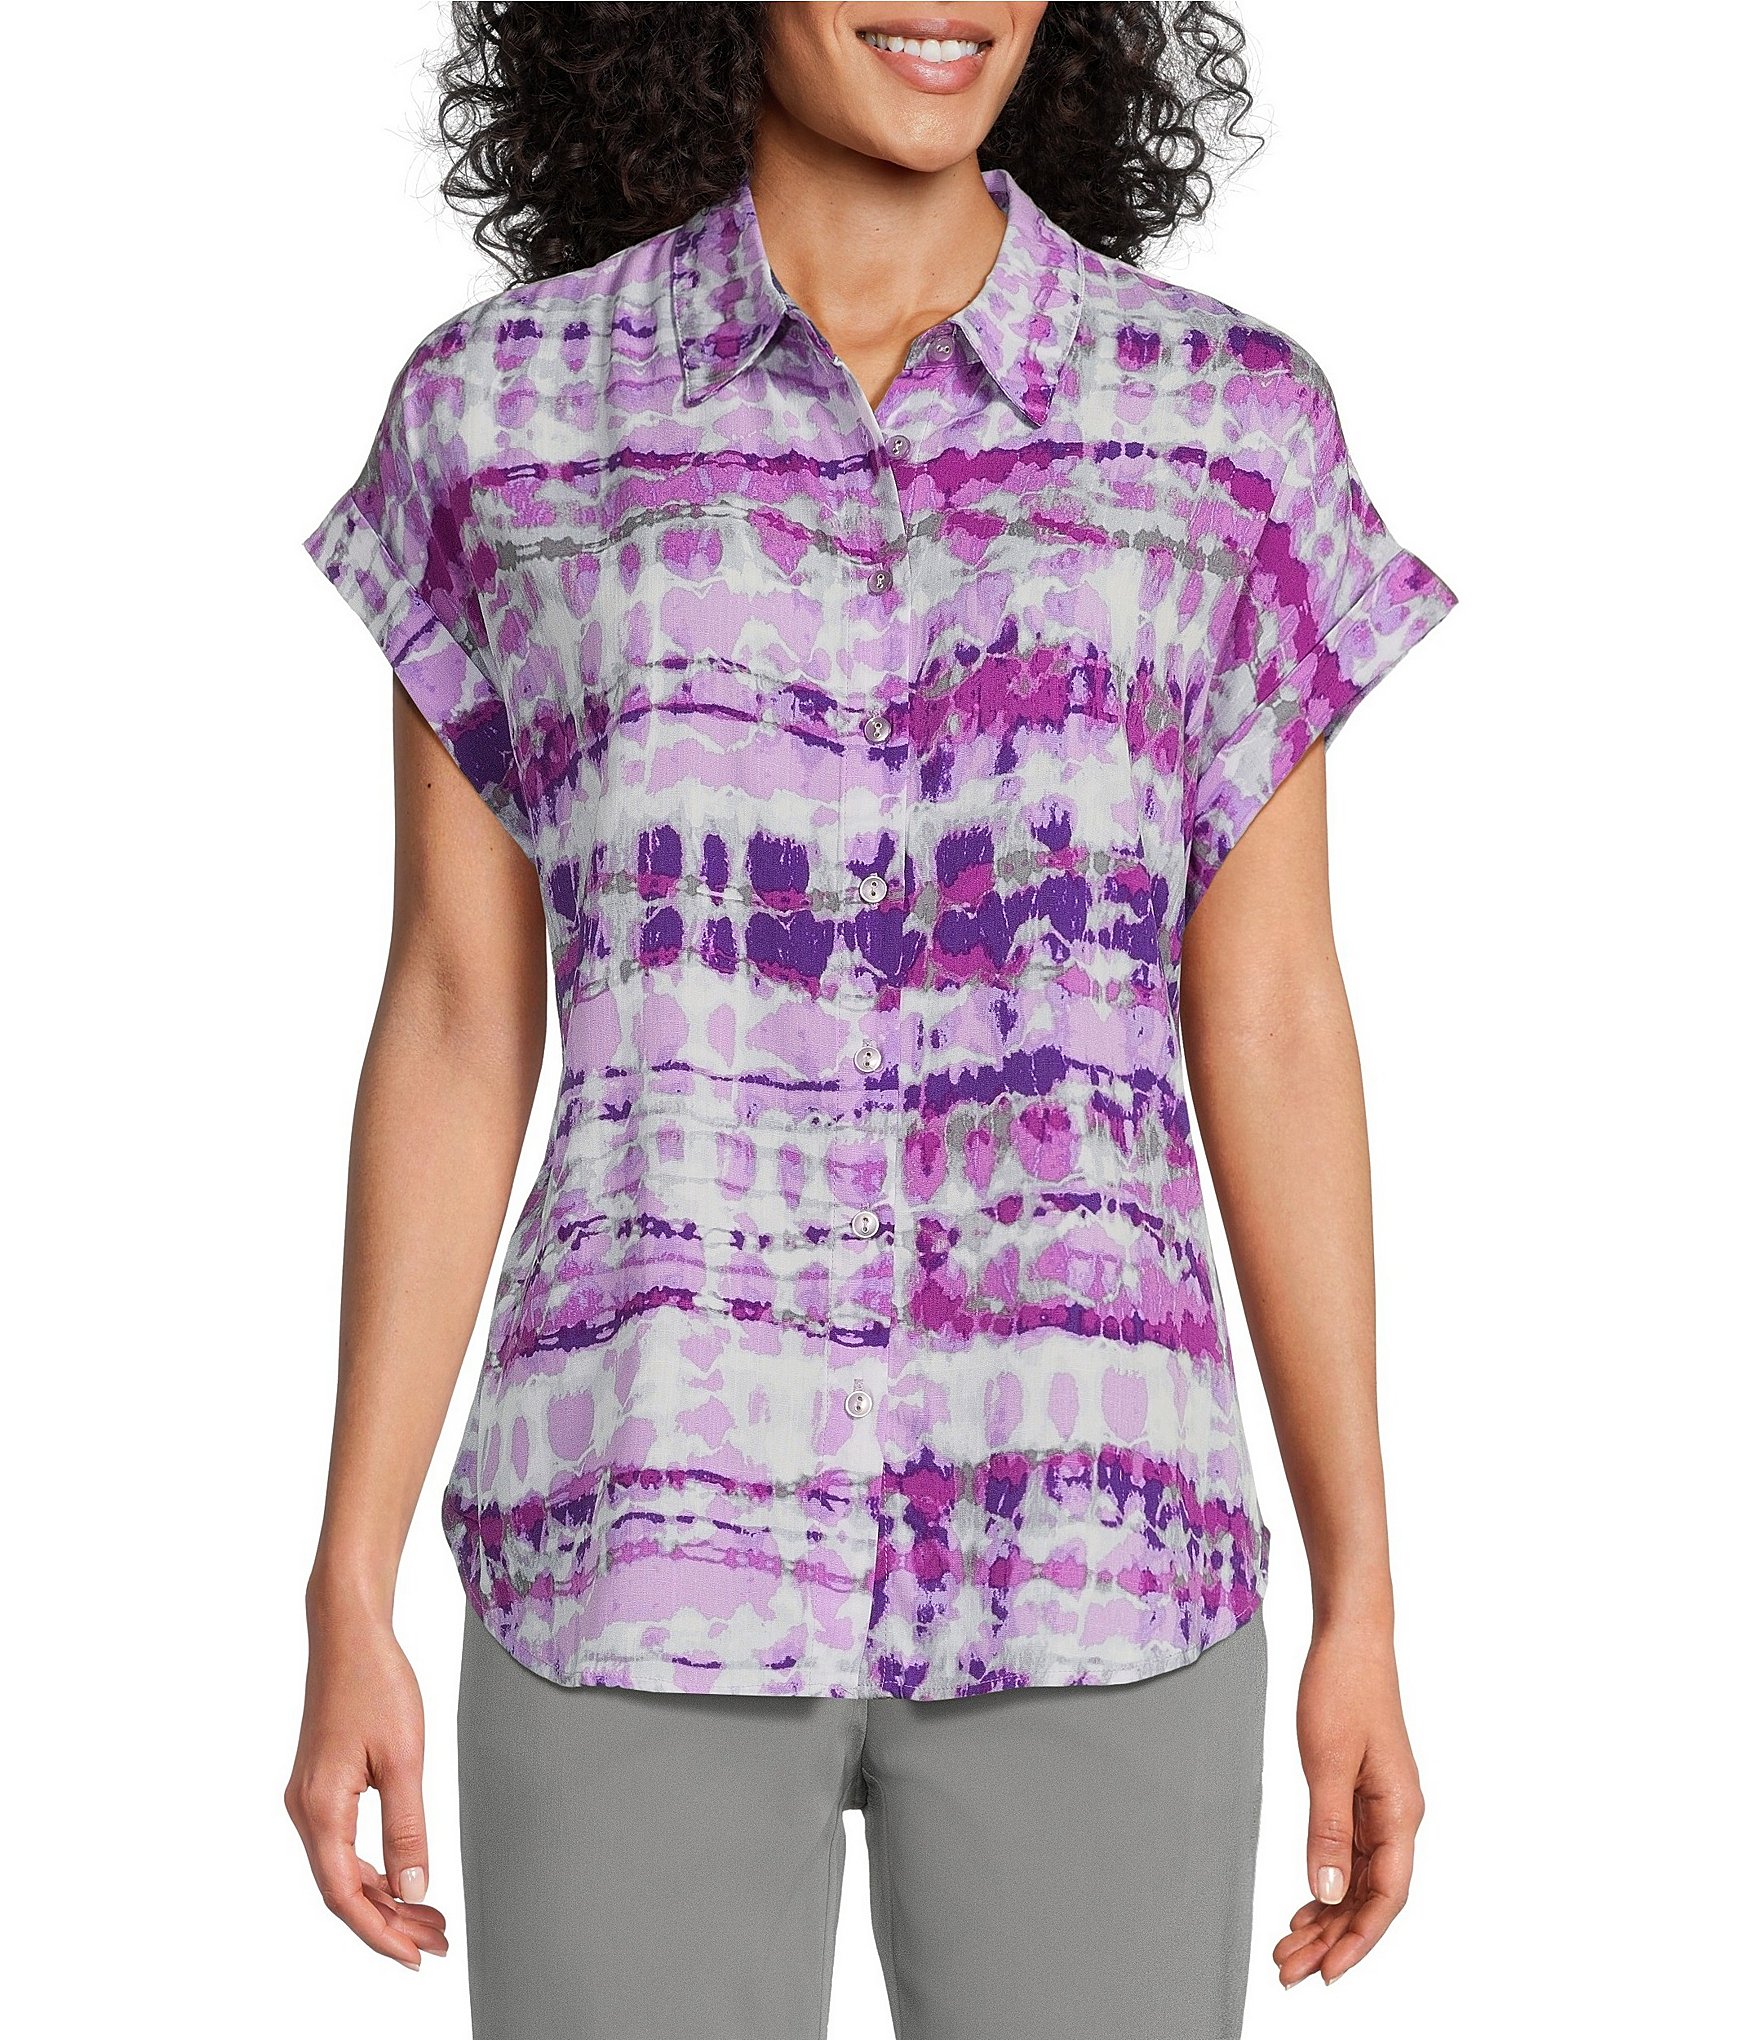 Women's (S) Purple Tie Dye Short Sleeve Shirt